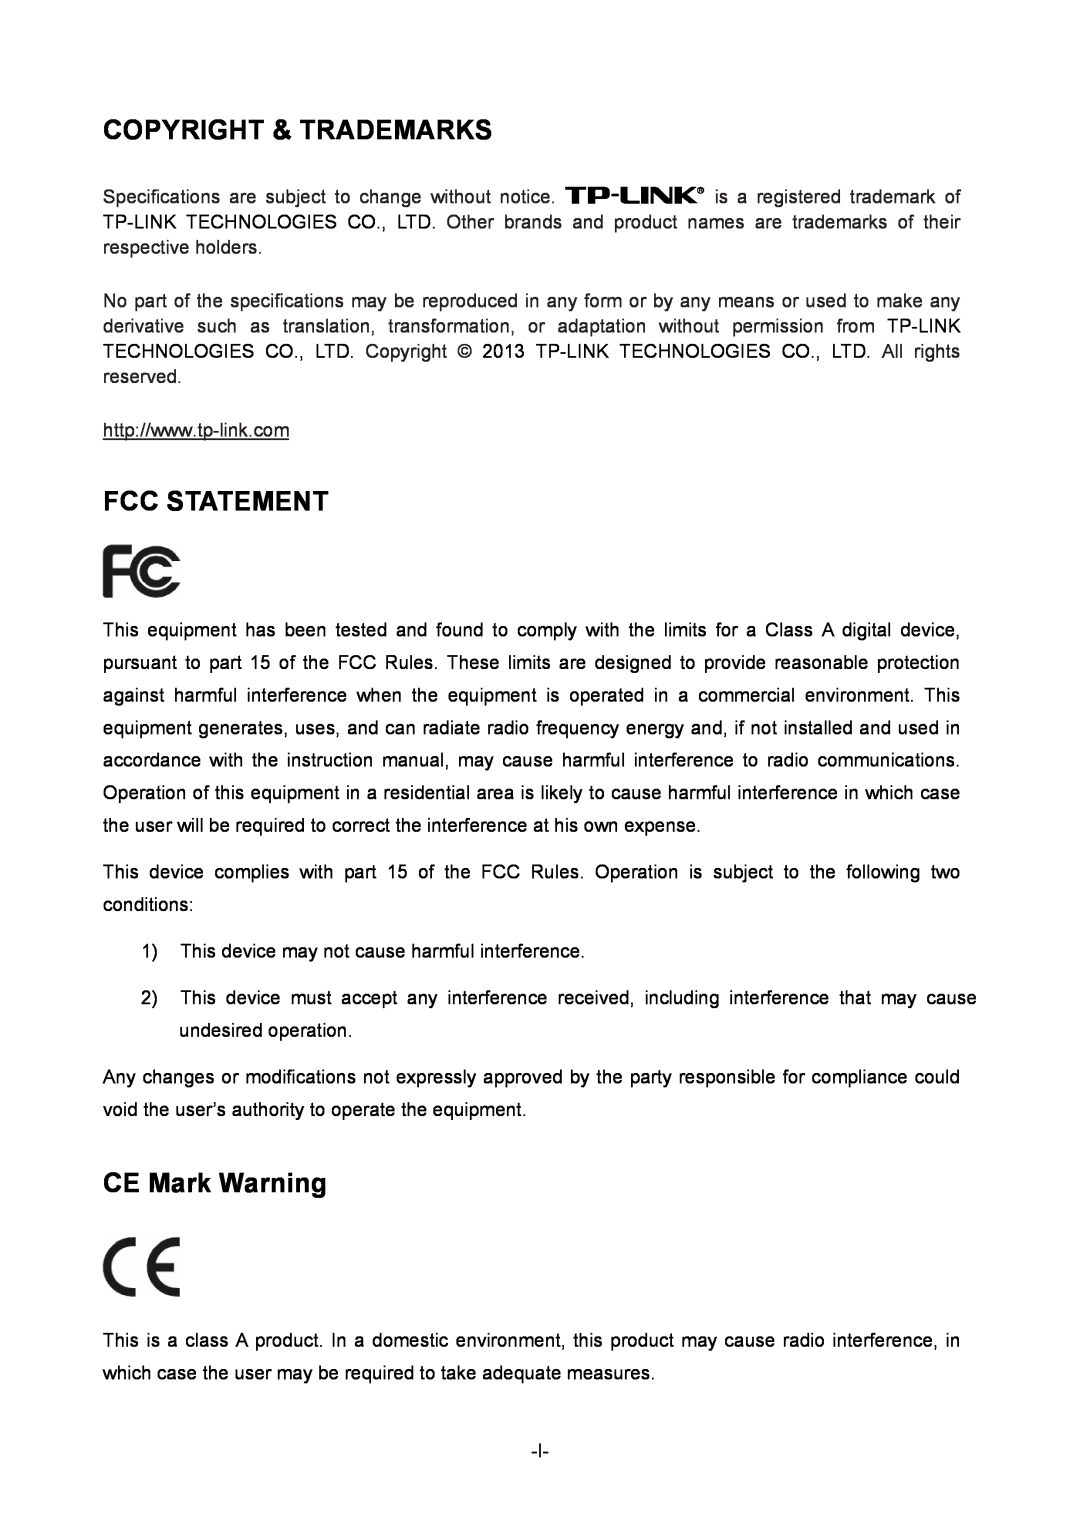 TP-Link TL-ER604W manual Copyright & Trademarks, Fcc Statement, CE Mark Warning 